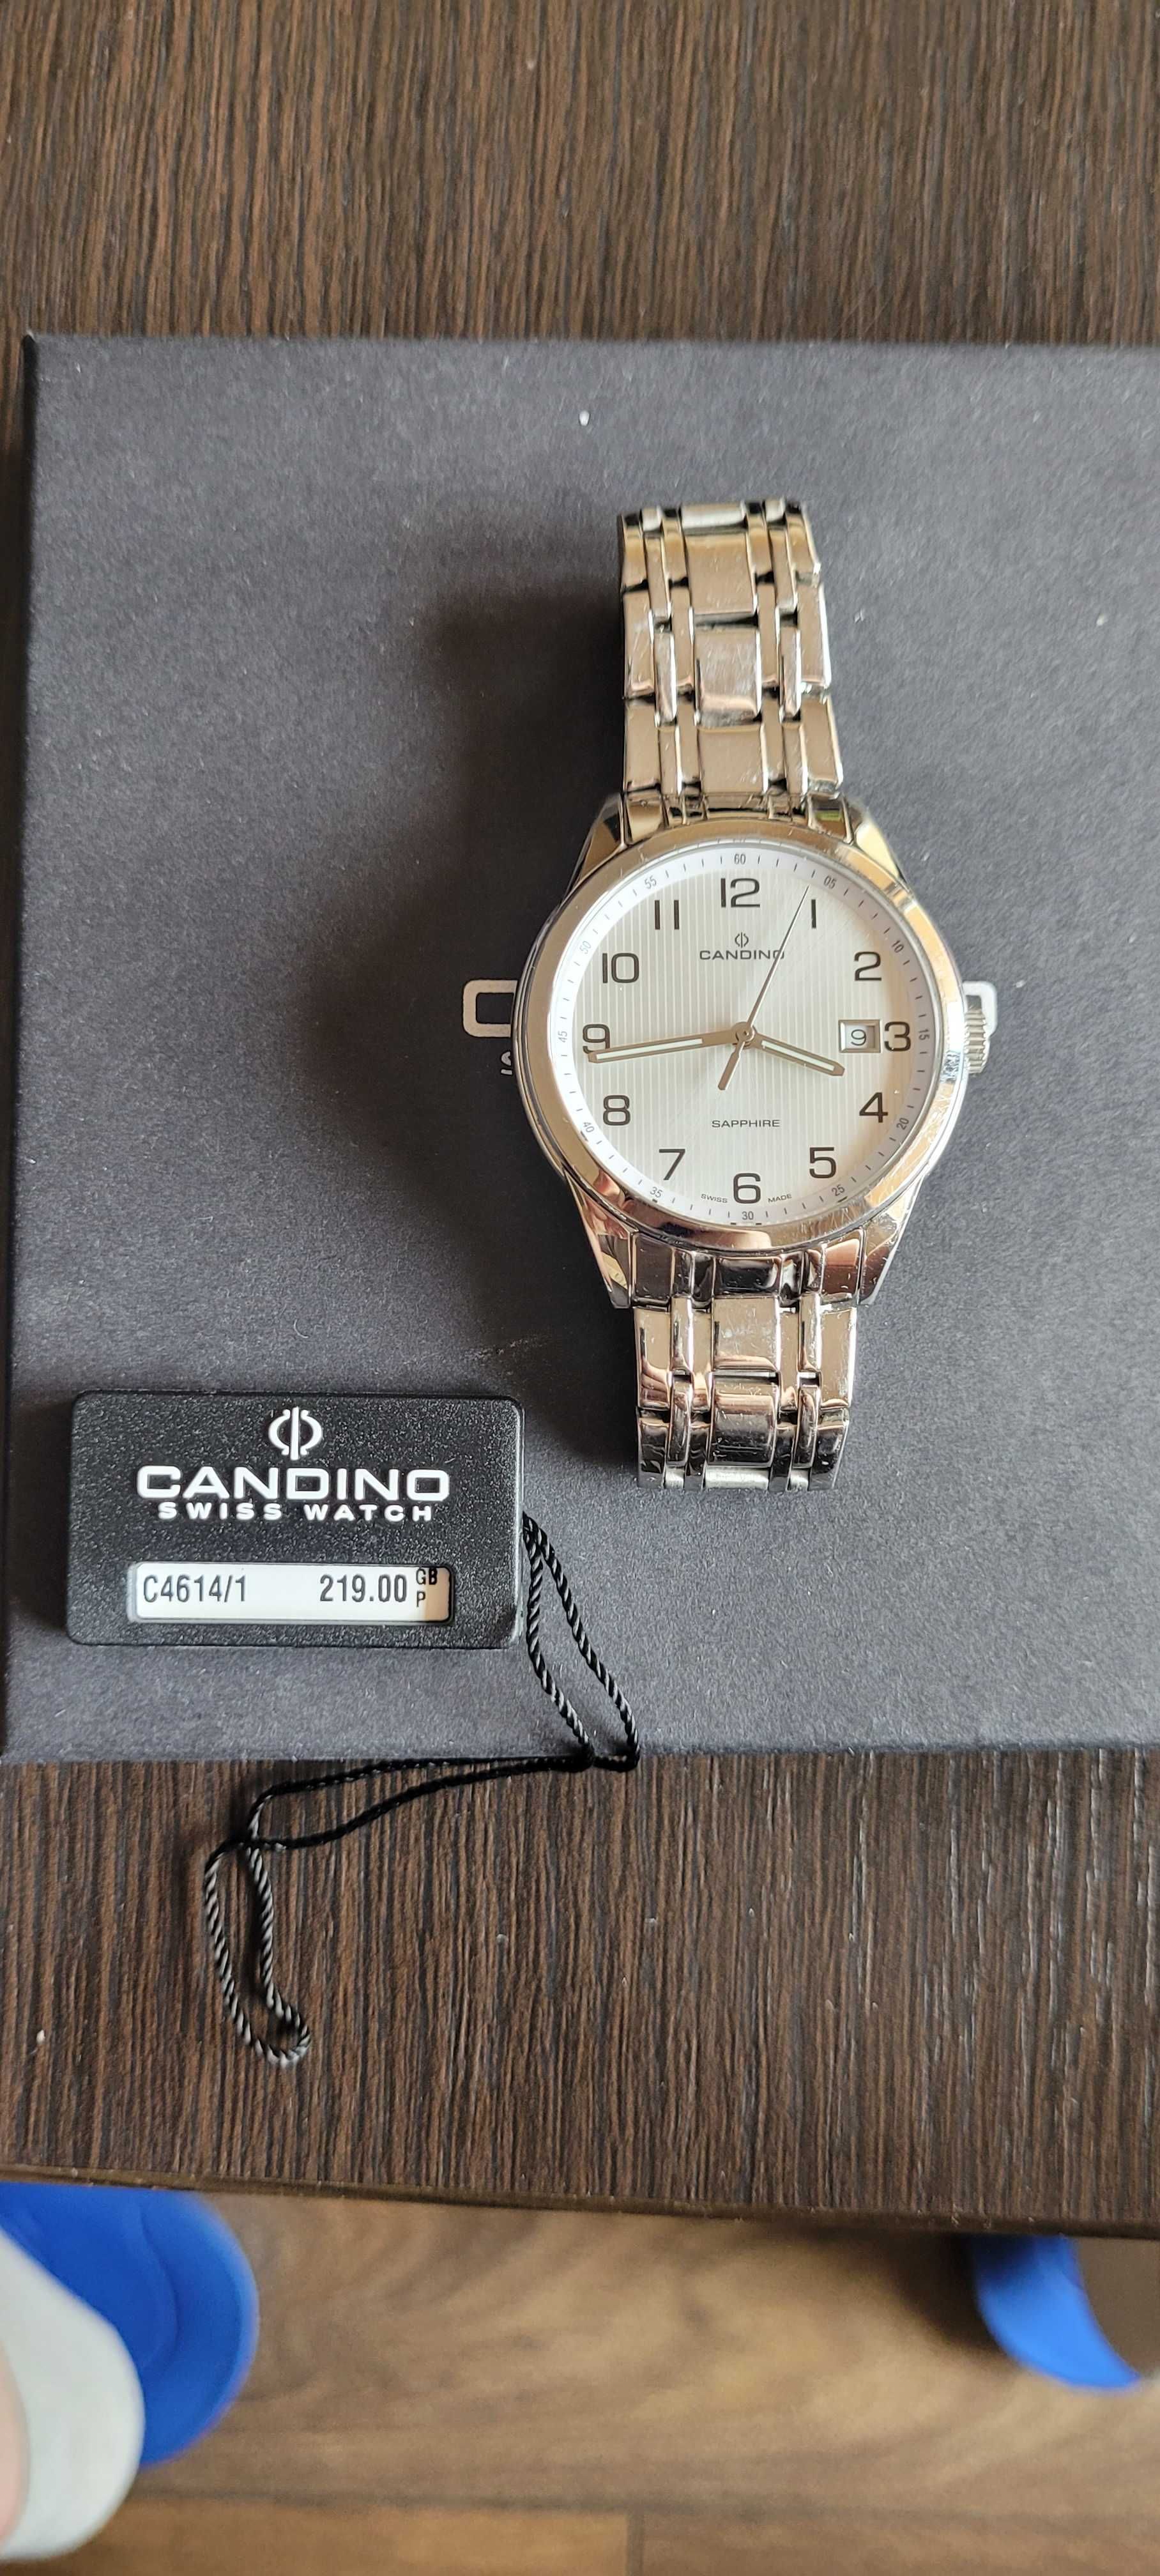 Zegarek męski ze szkłem szafirowym Candino C4614/1 (w sklepie 719 zł)